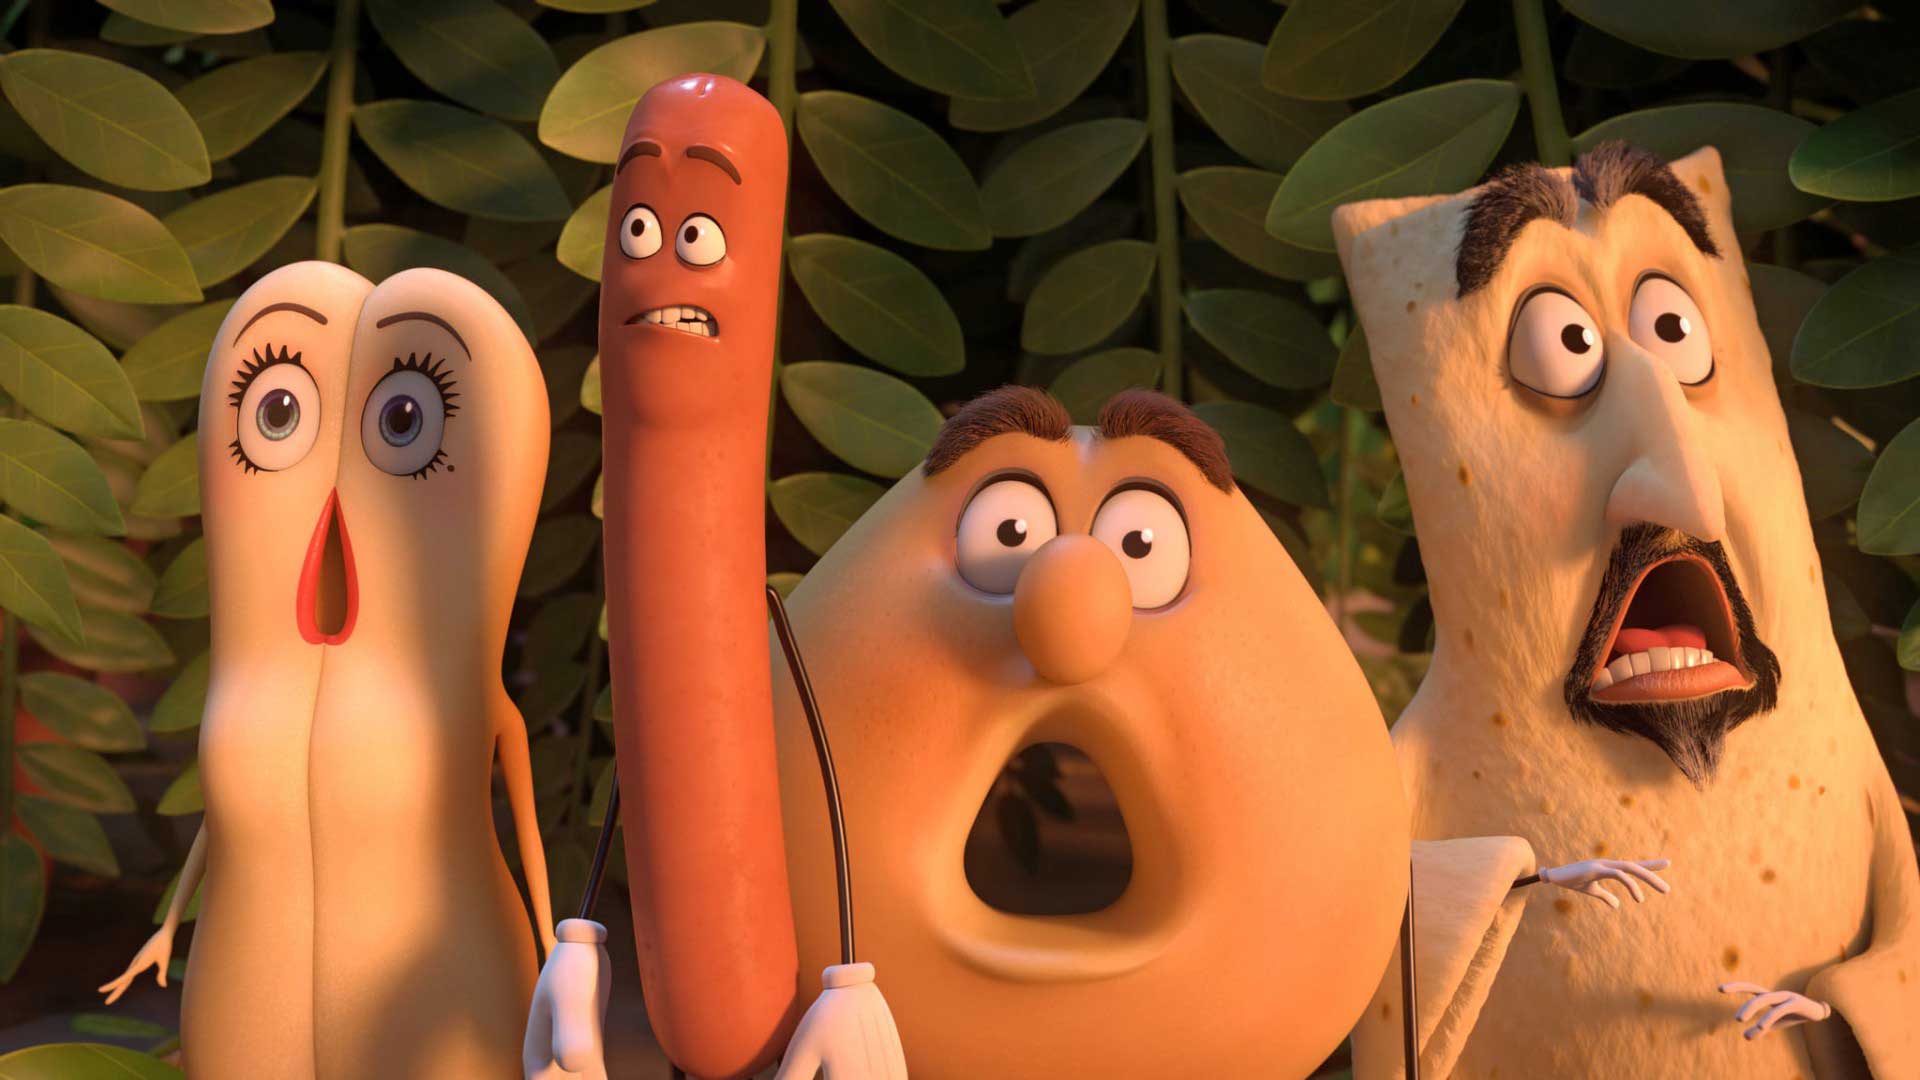 دانلود انیمیشن Sausage Party 2016